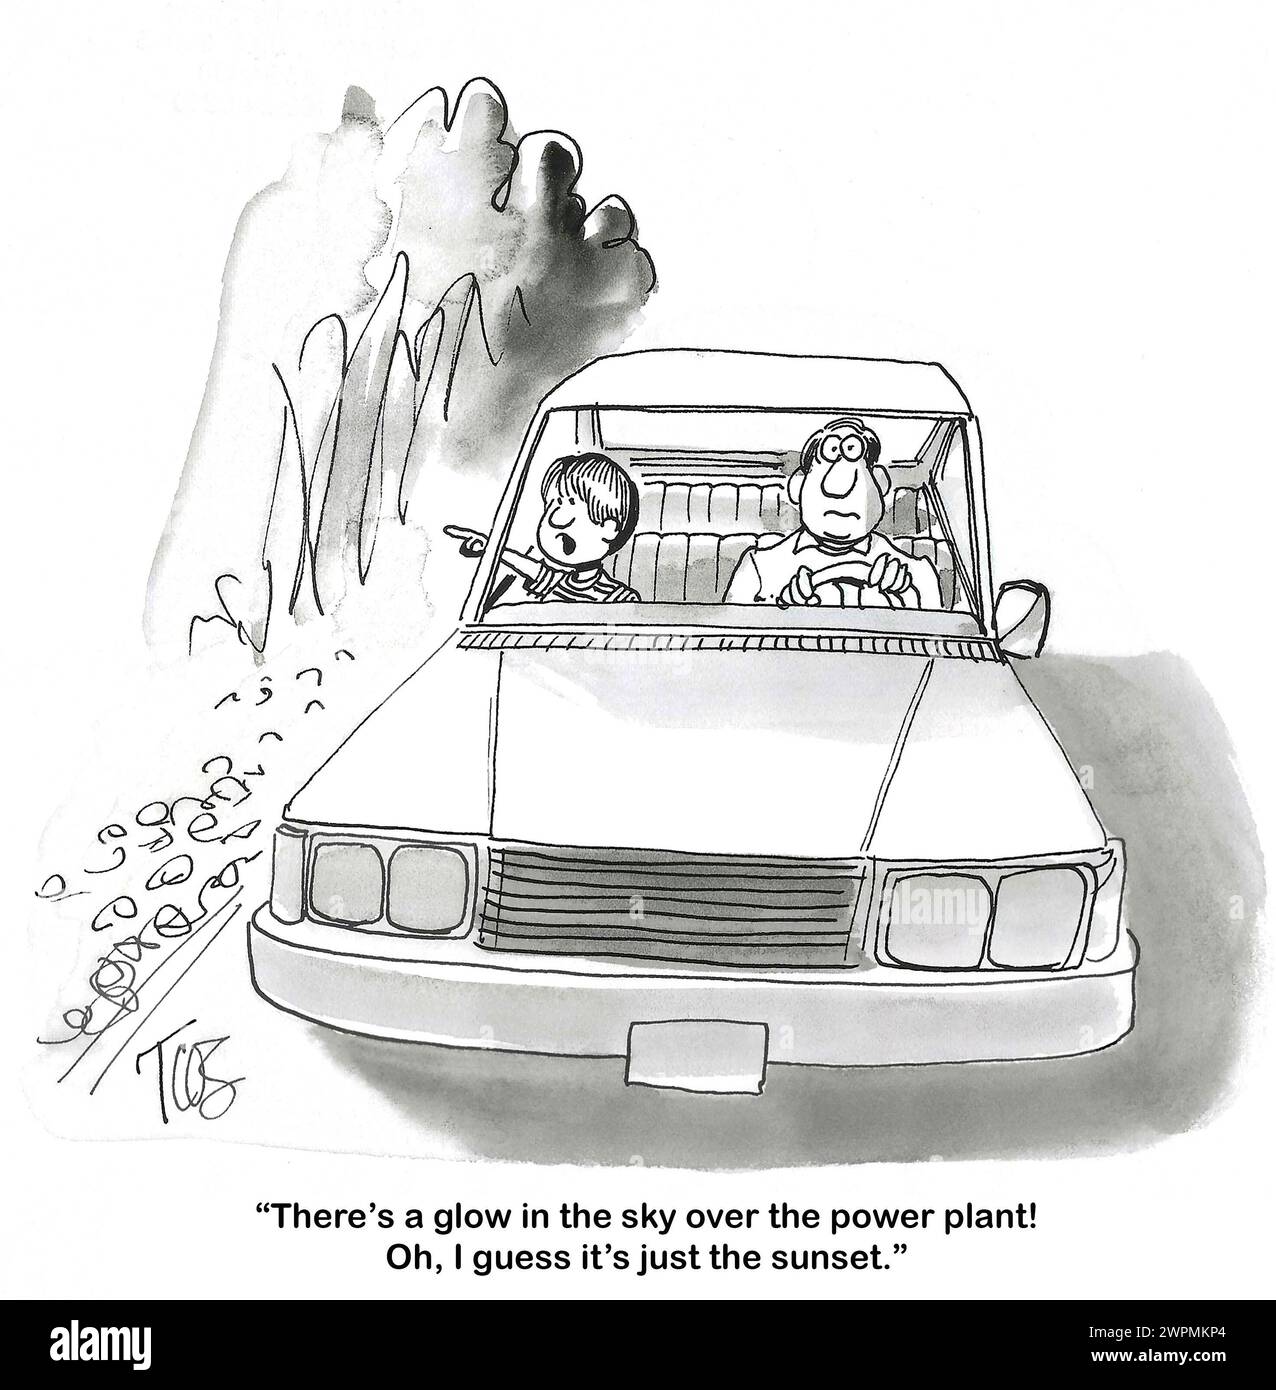 BW-Cartoon eines Sohnes mit seinem Vater im Auto. Der Sohn sieht ein Leuchten über dem Kernkraftwerk, aber es ist nur der Sonnenuntergang. Stockfoto